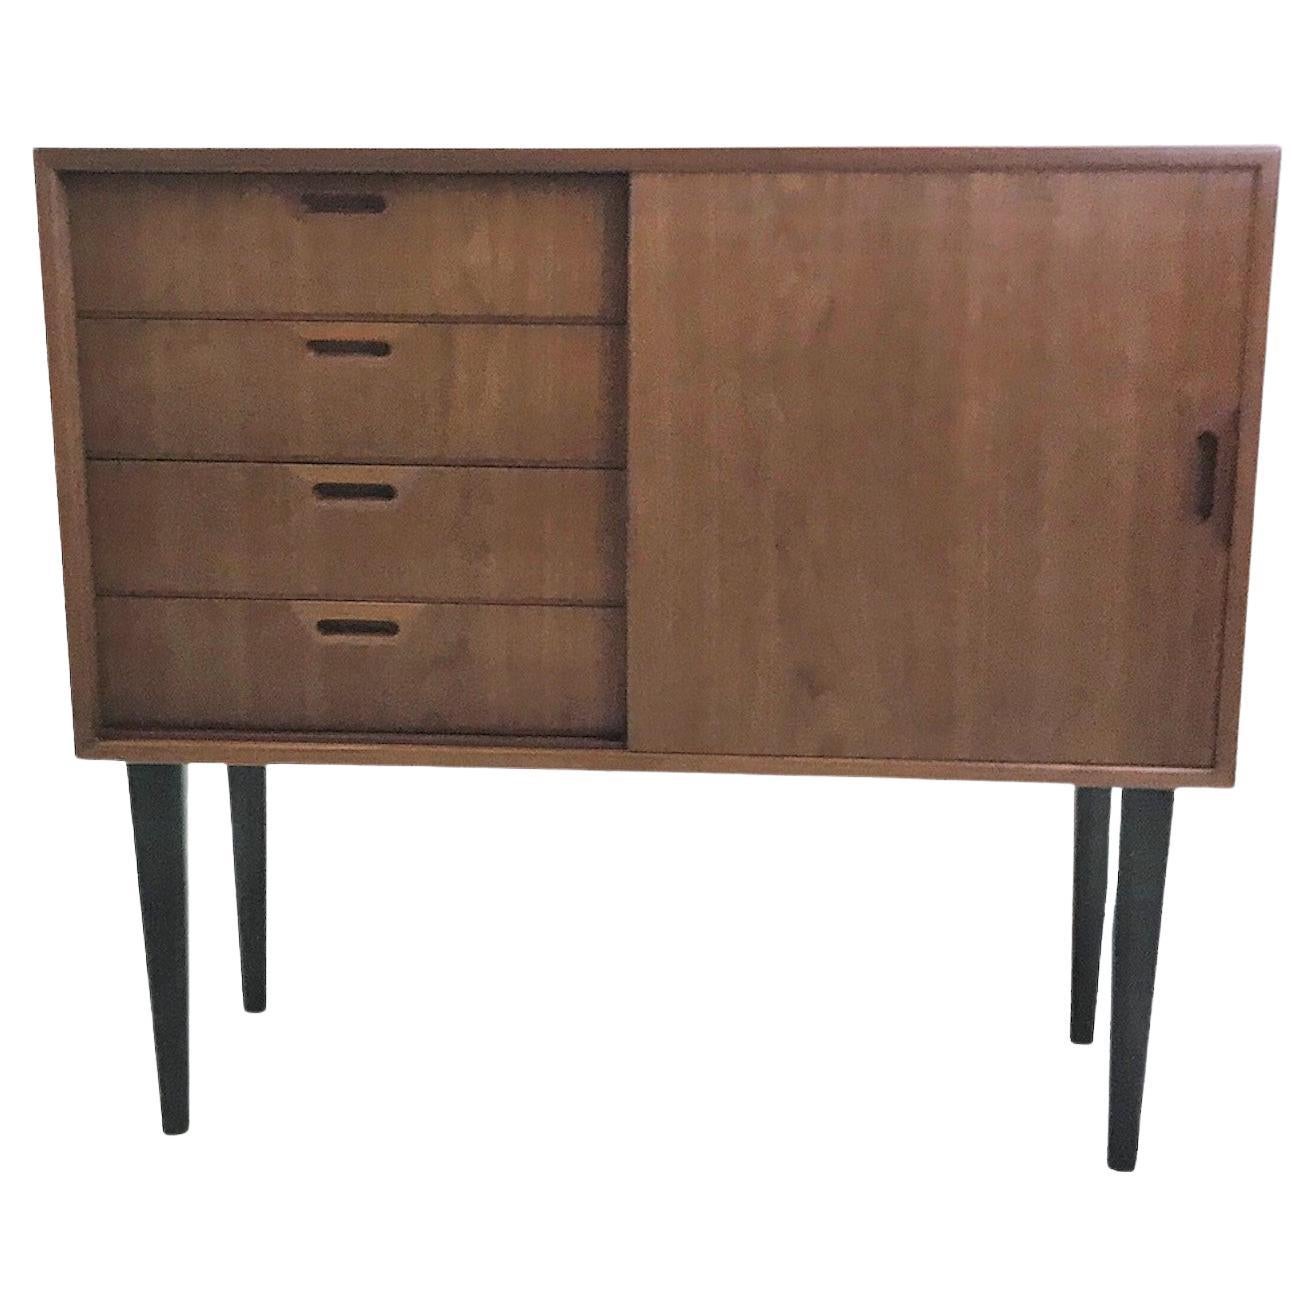 1950s Scandinavian Modern Narrow Walnut Cabinet or Bedside Cabinet